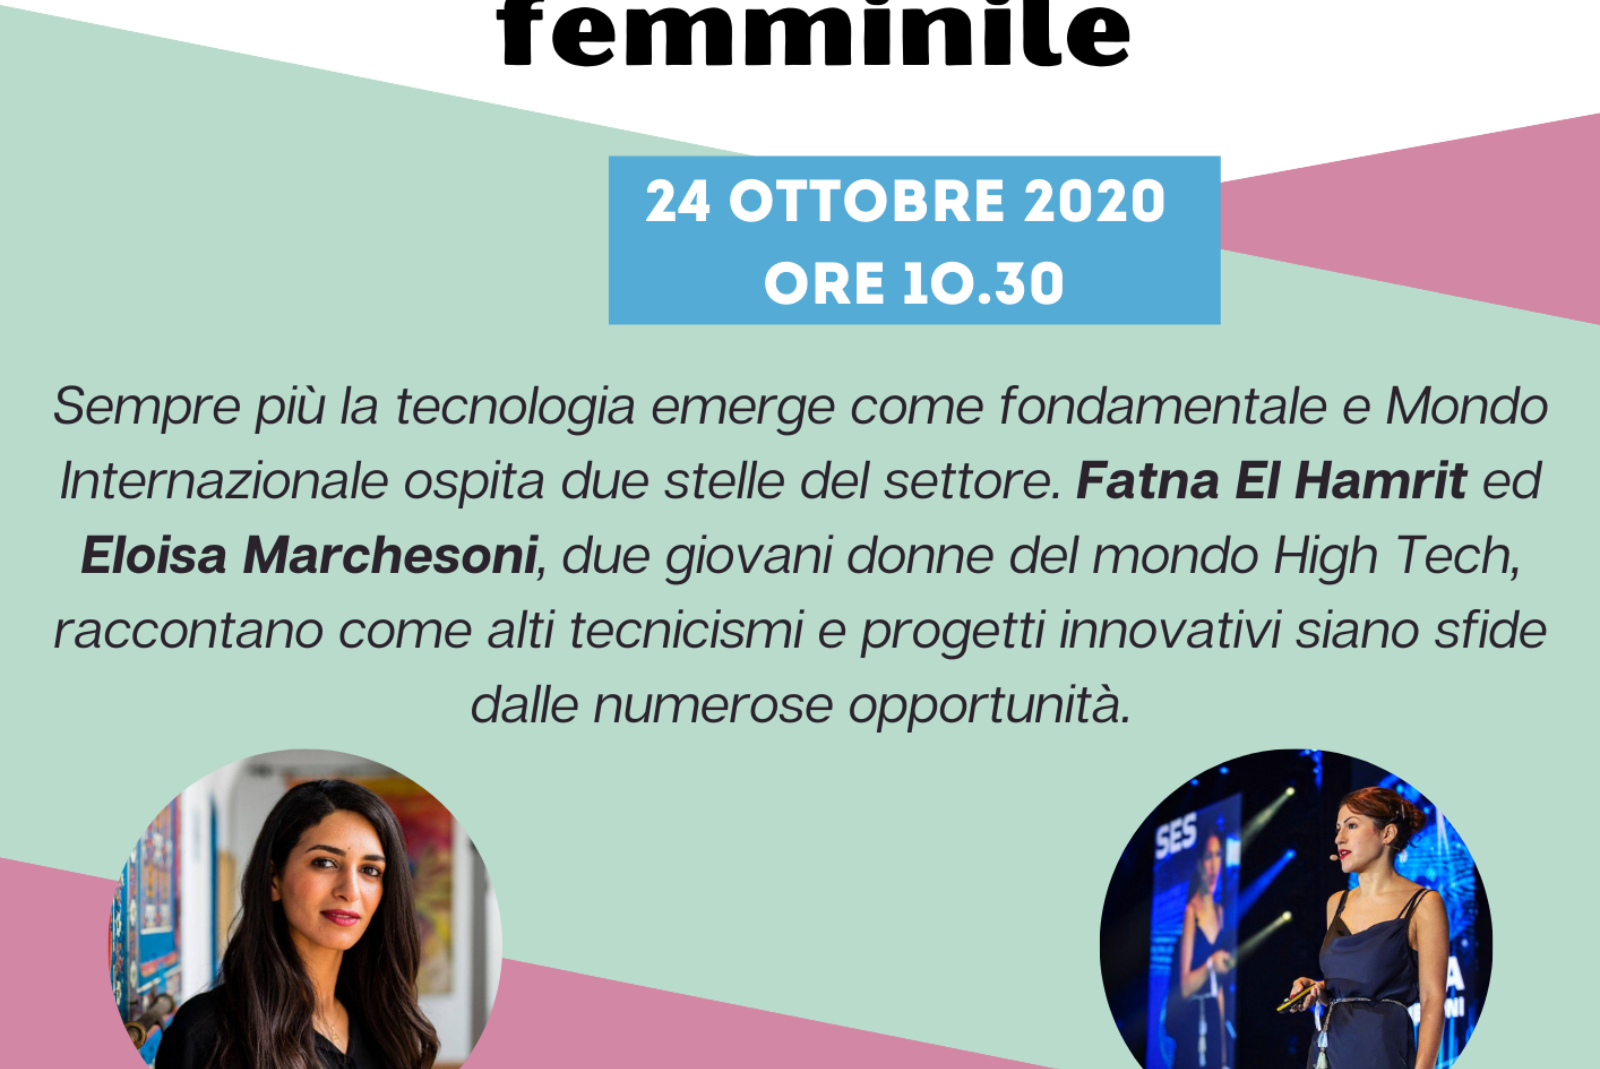 Una rivoluzione tecnologica tutta al femminile - 24 ottobre 2020